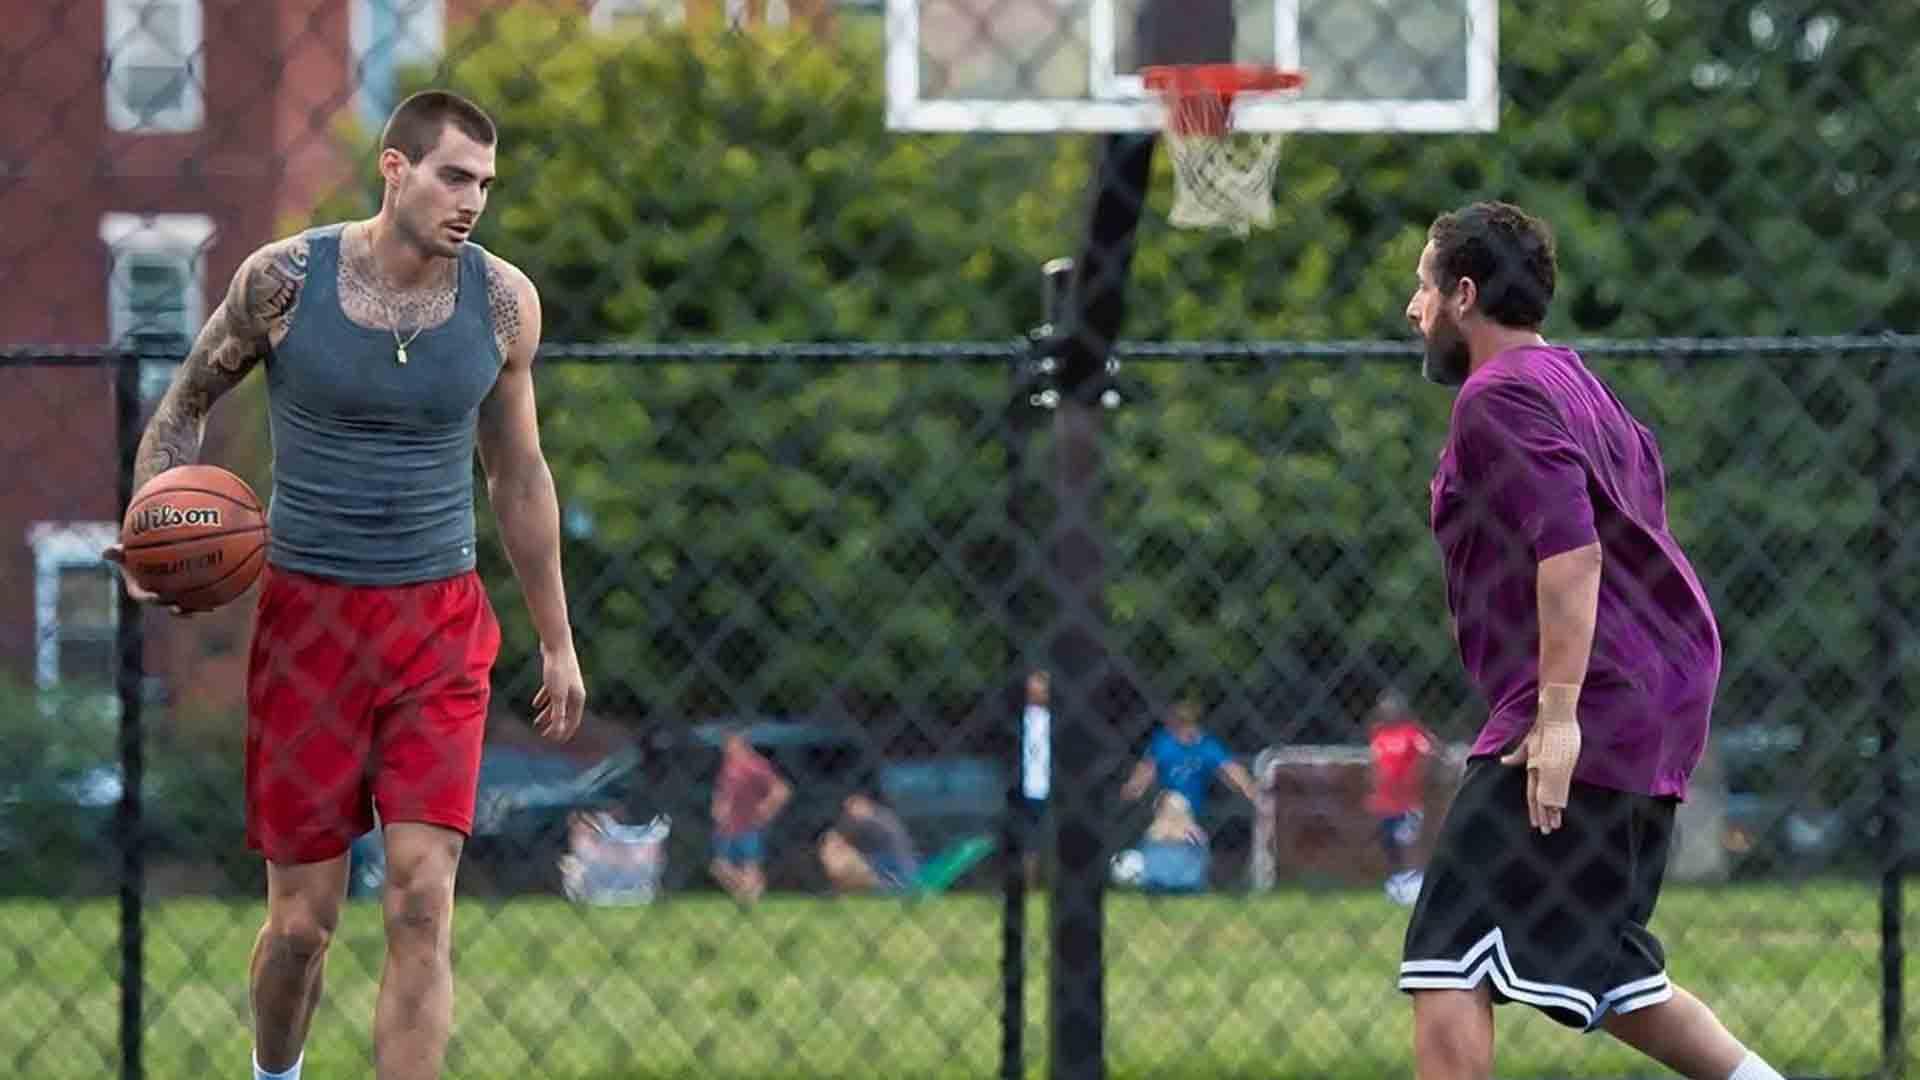 آدام سندلر در حال بسکتبال بازی کردن در فیلم Hustle